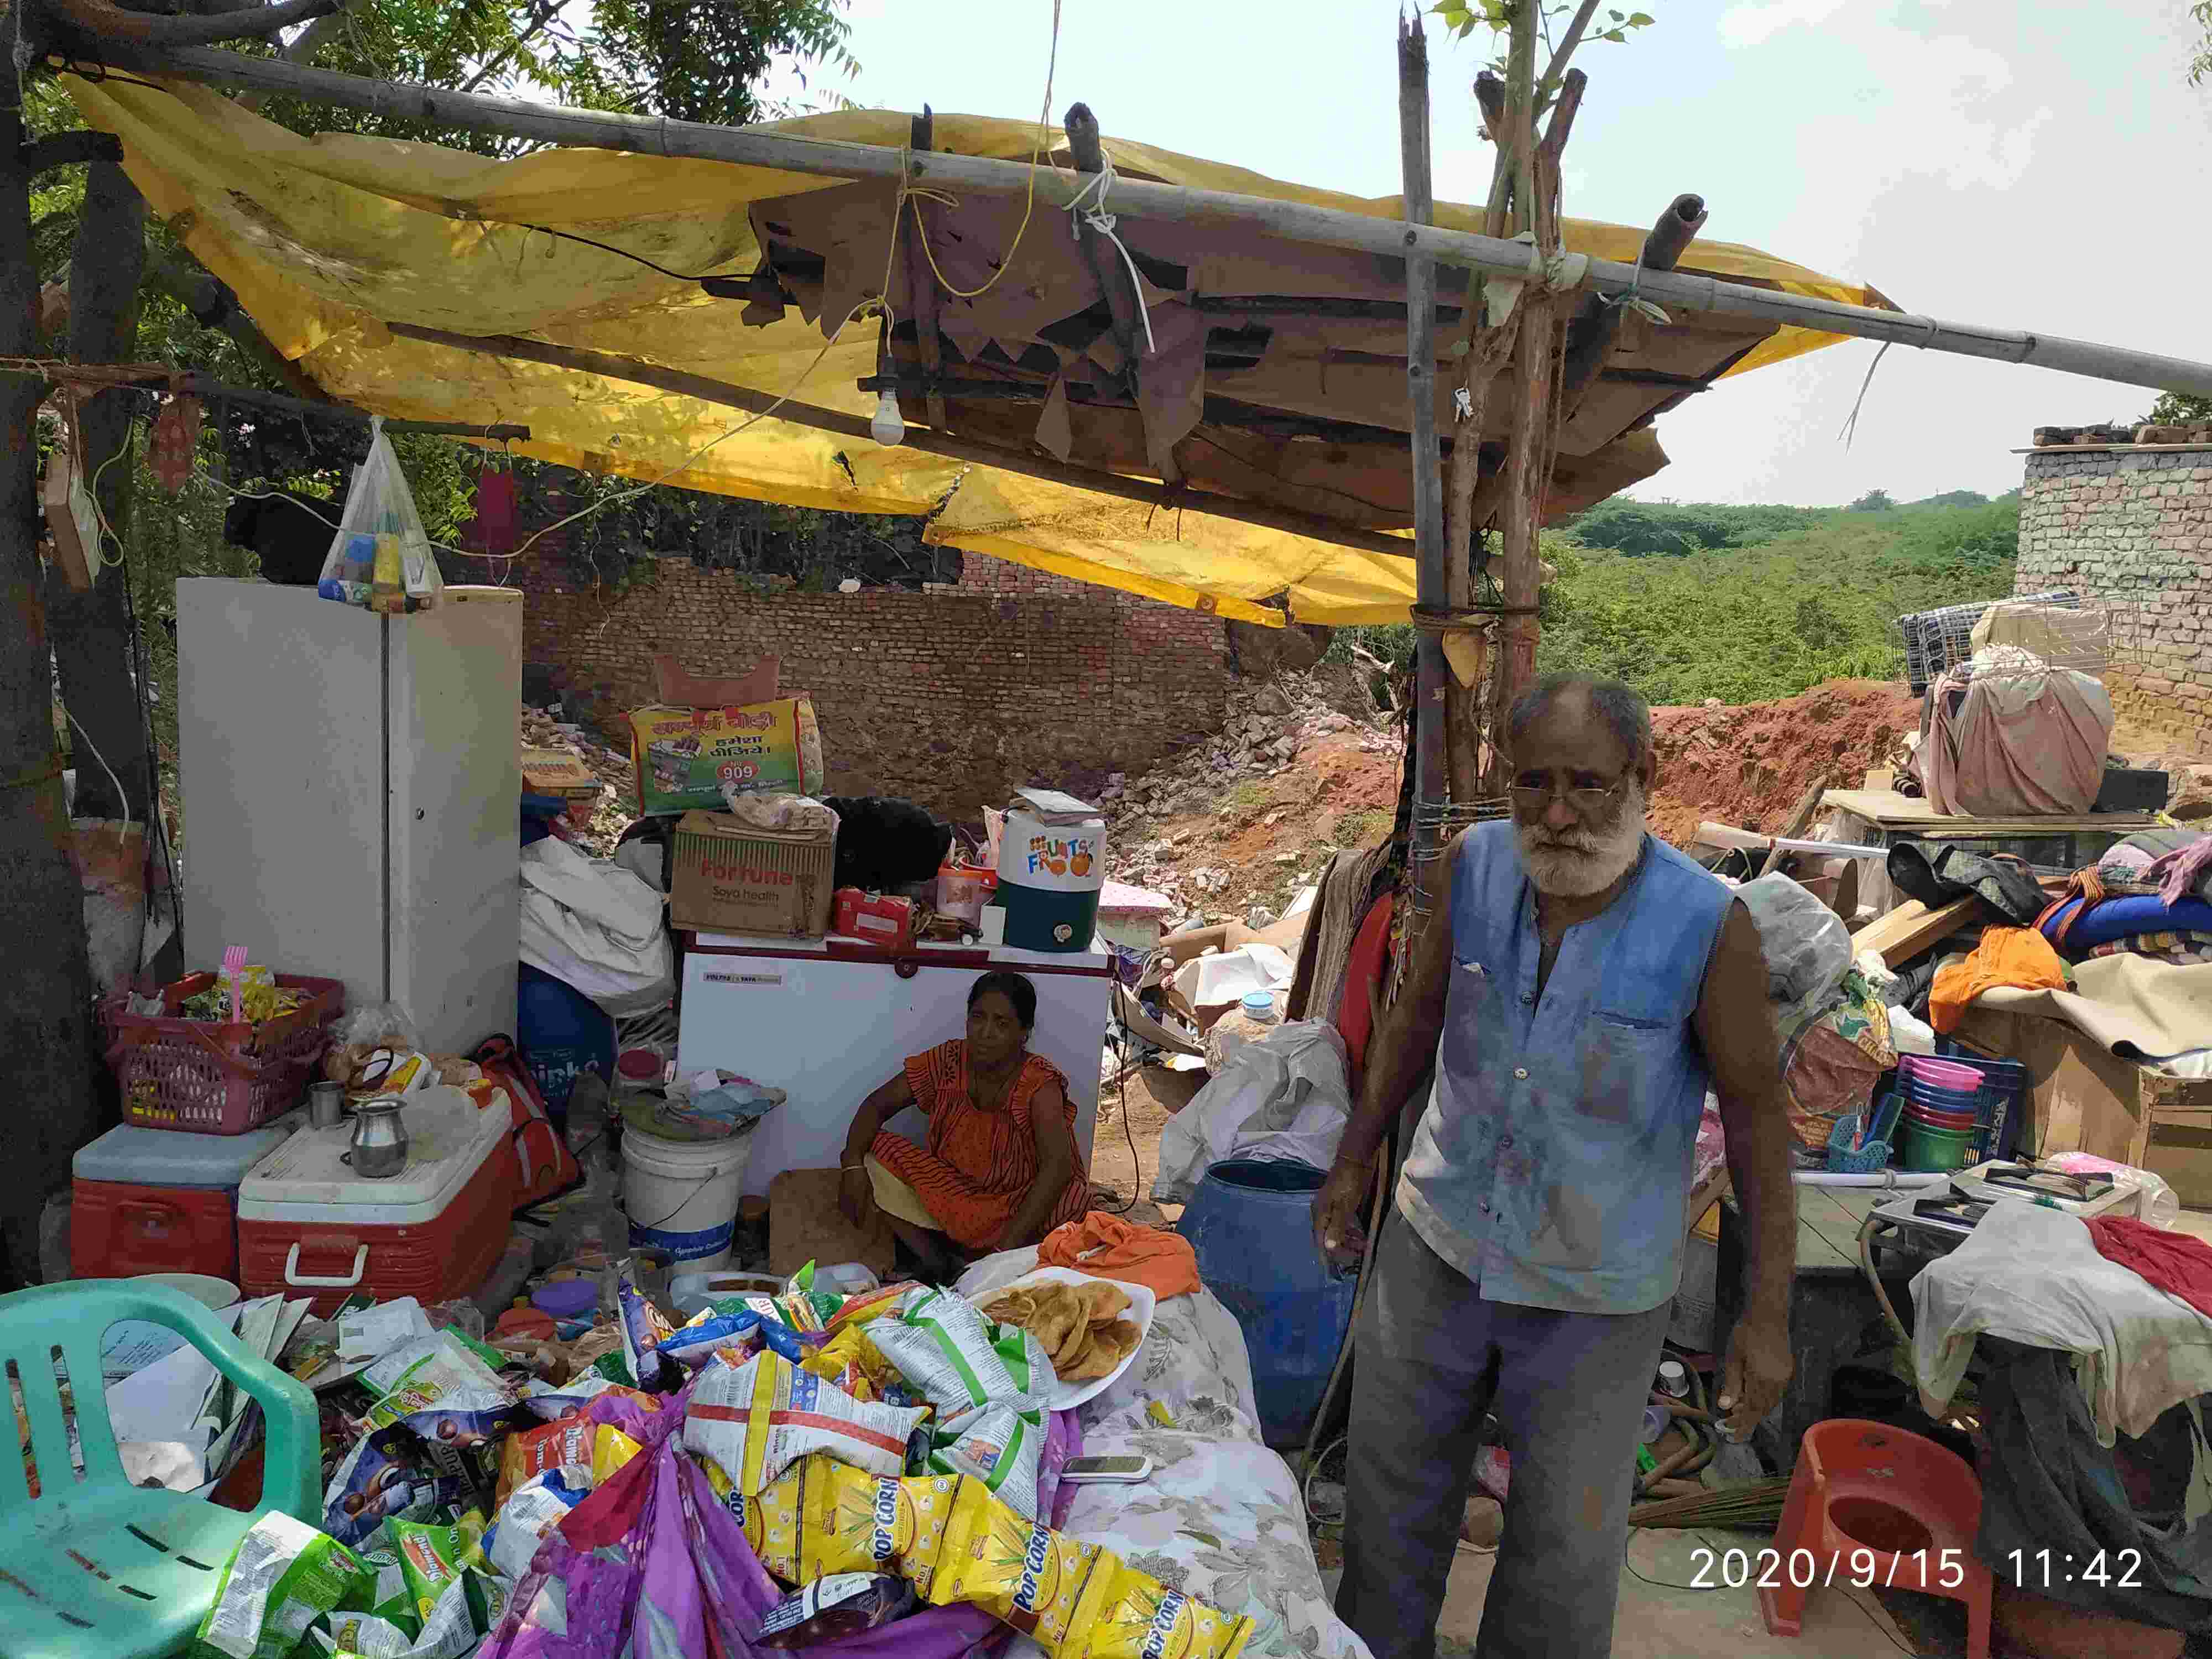 हरियाणा : घर की कीमत जान देकर चुकाते मजदूर, सुप्रीम कोर्ट का आदेश बना खोरी के ग्रामीणों के लिए मृत्युदंड जैसा